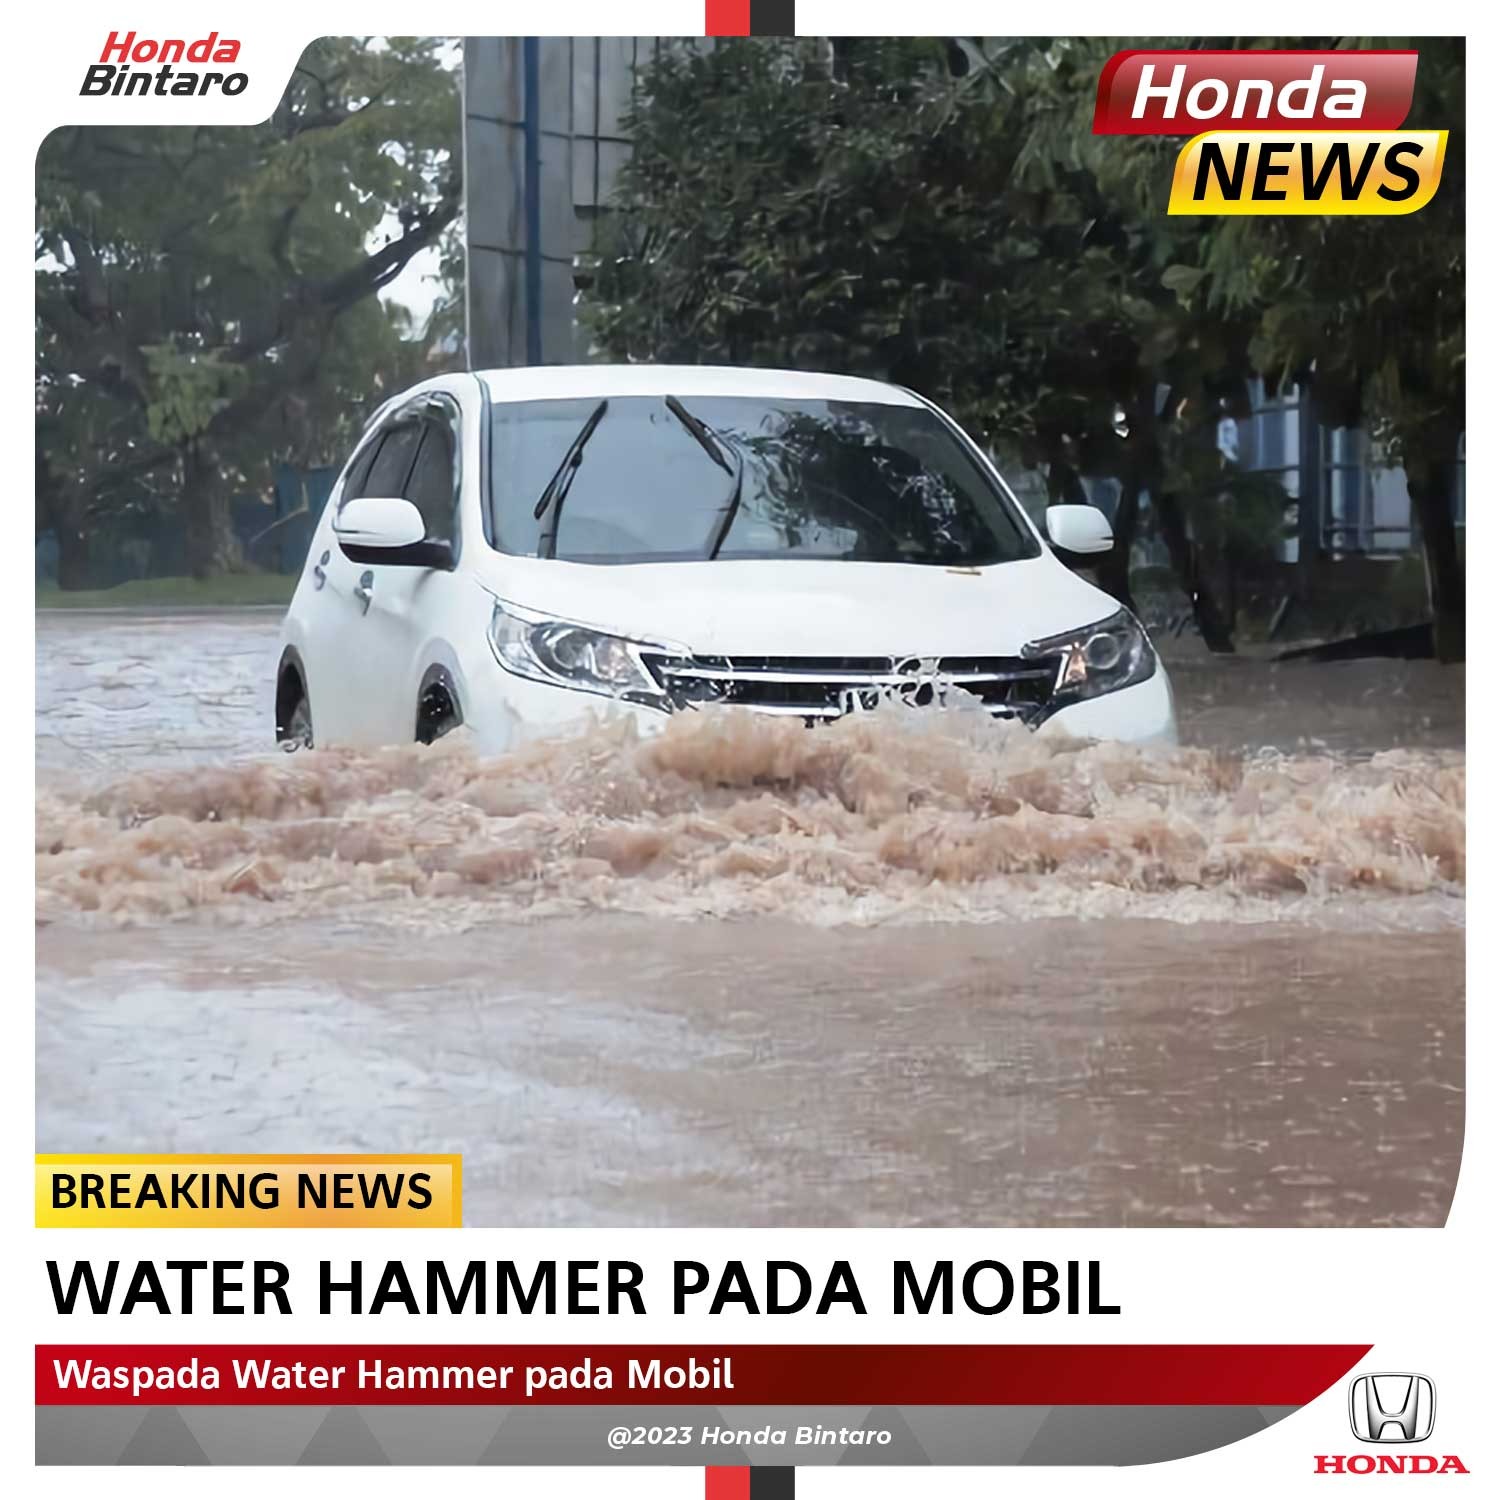 Waspada Inilah Bahaya Water Hammer pada Mobil